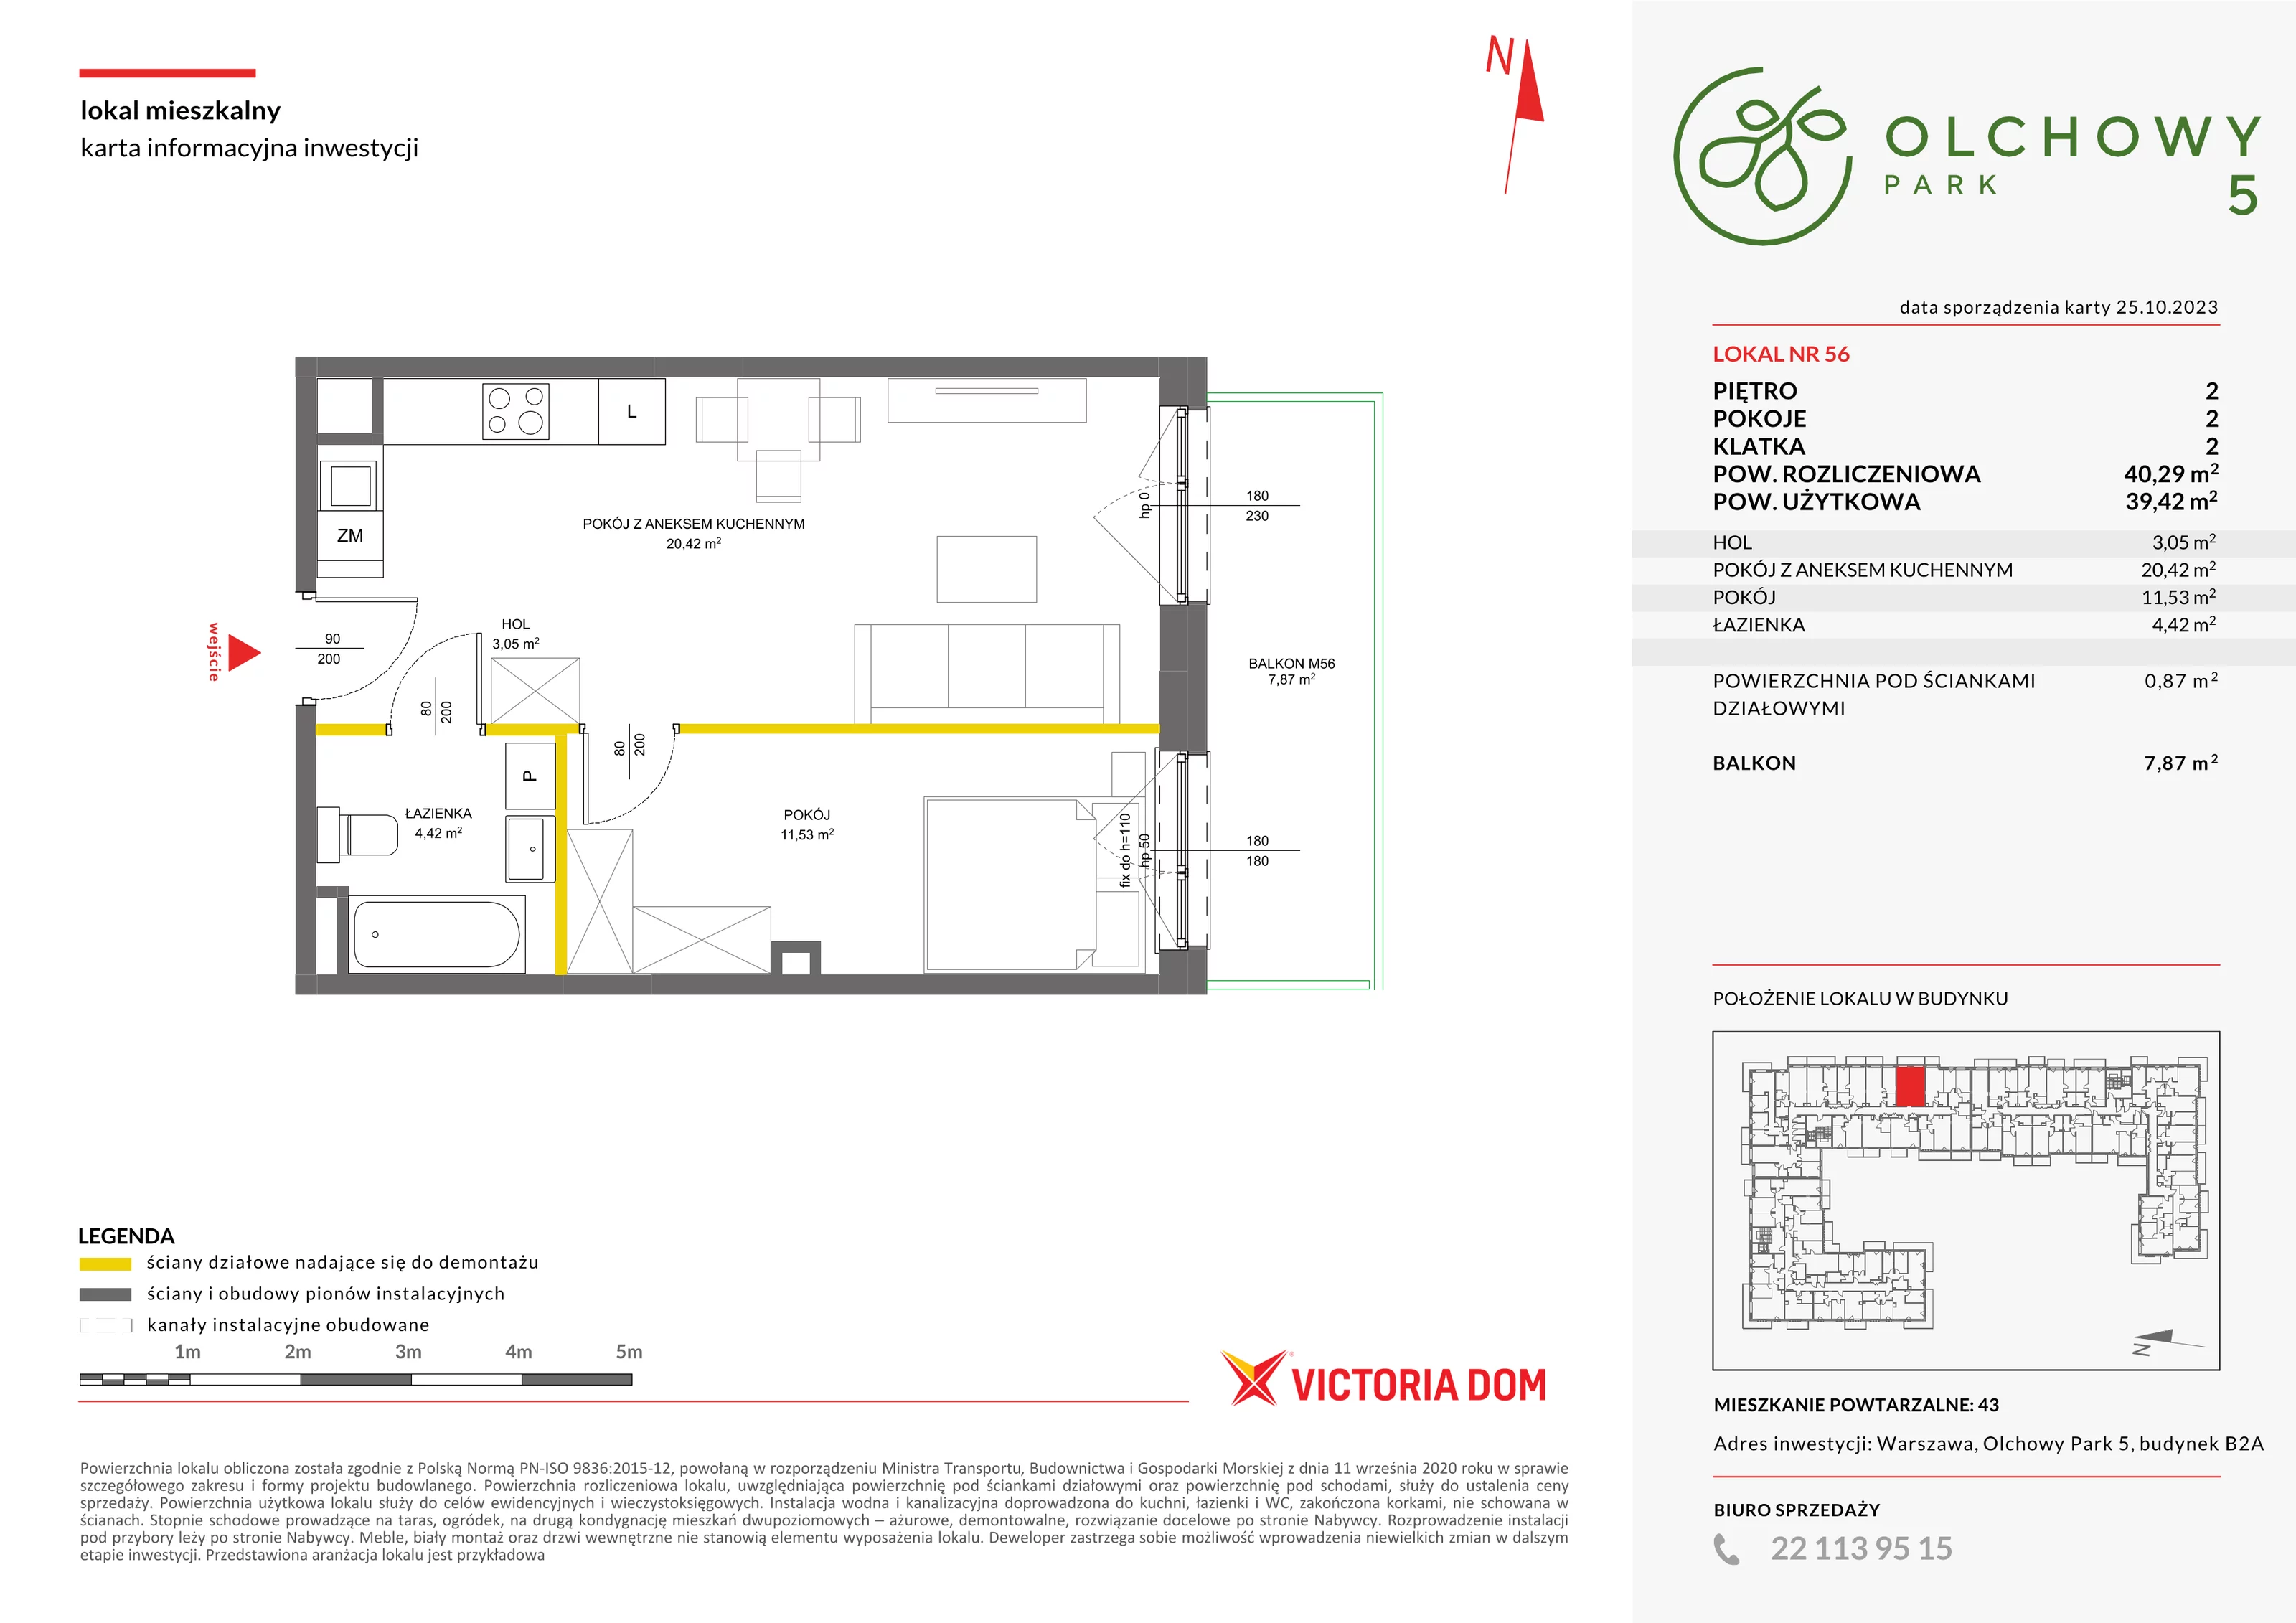 Mieszkanie 40,29 m², piętro 2, oferta nr V/56, Olchowy Park, Warszawa, Białołęka, Kobiałka, ul. Marii Callas